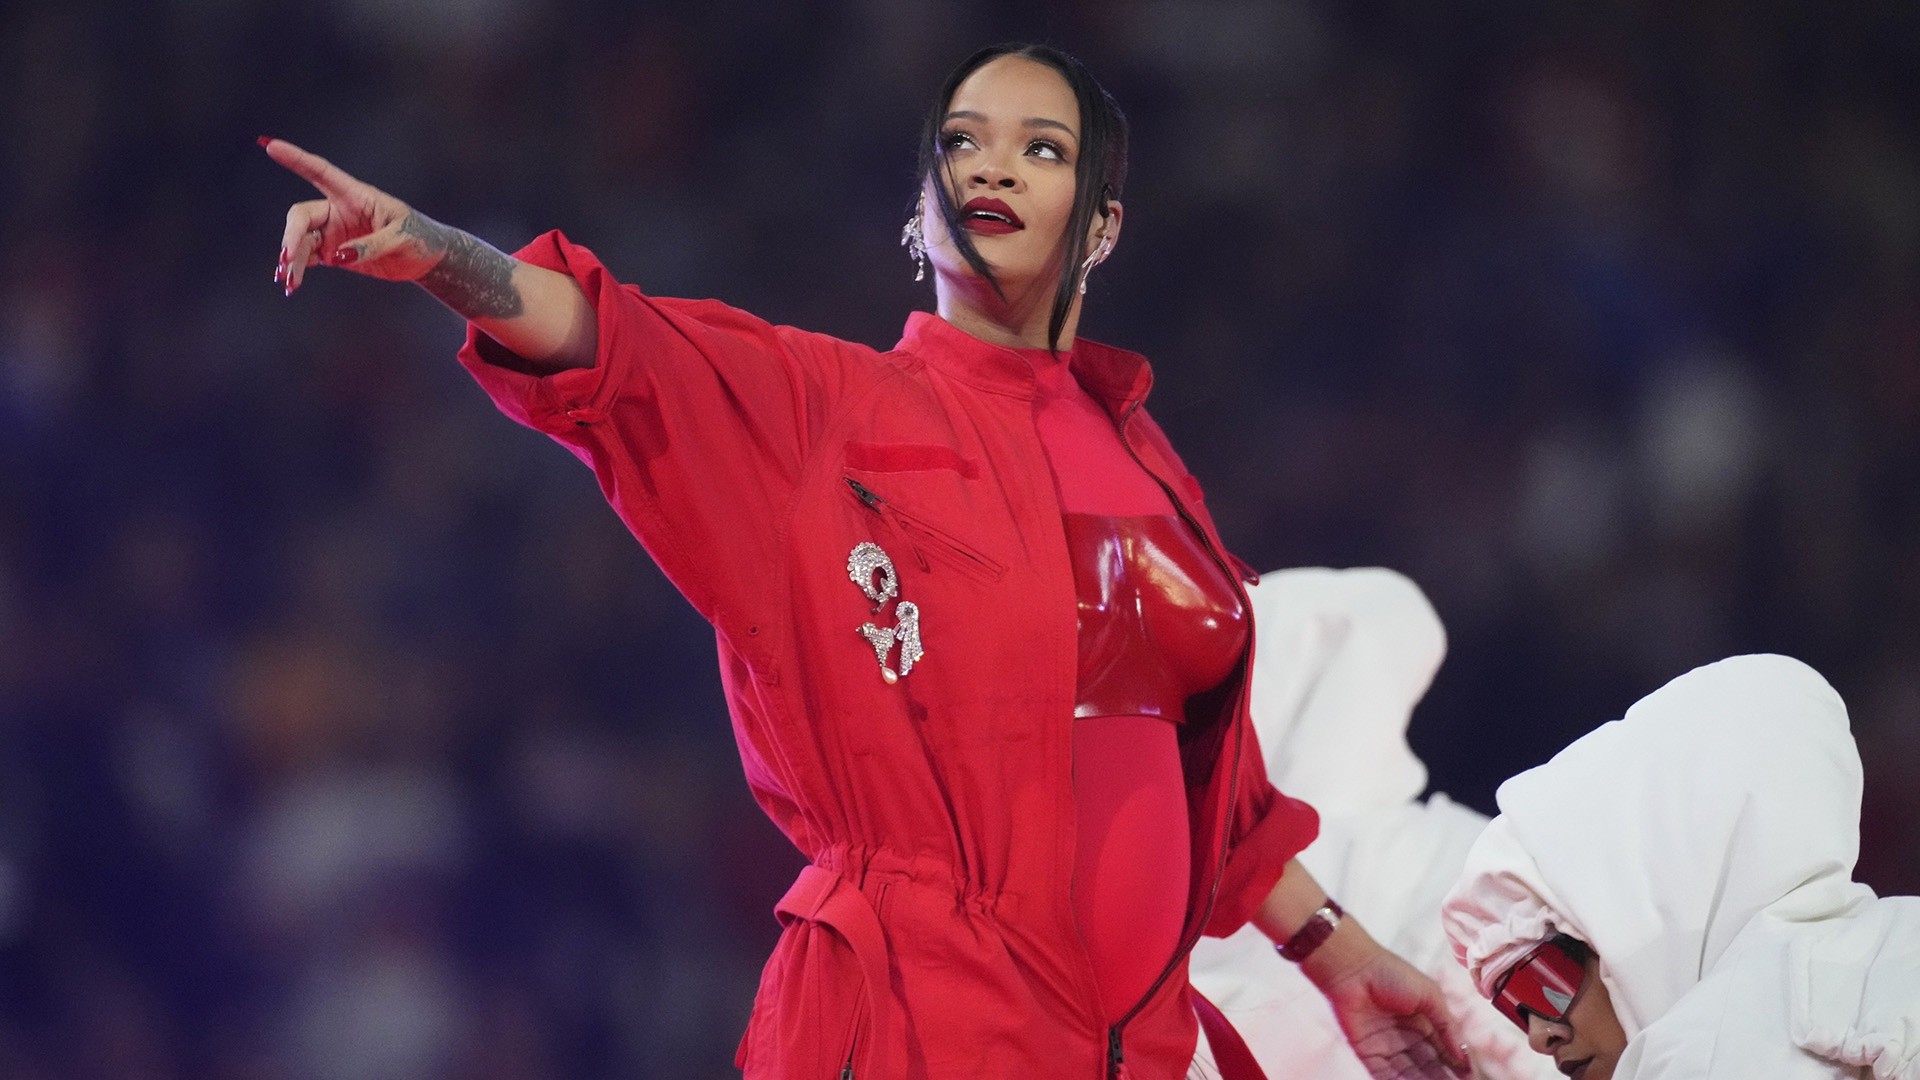 Confirmado: Rihanna cantará en los premios Óscar